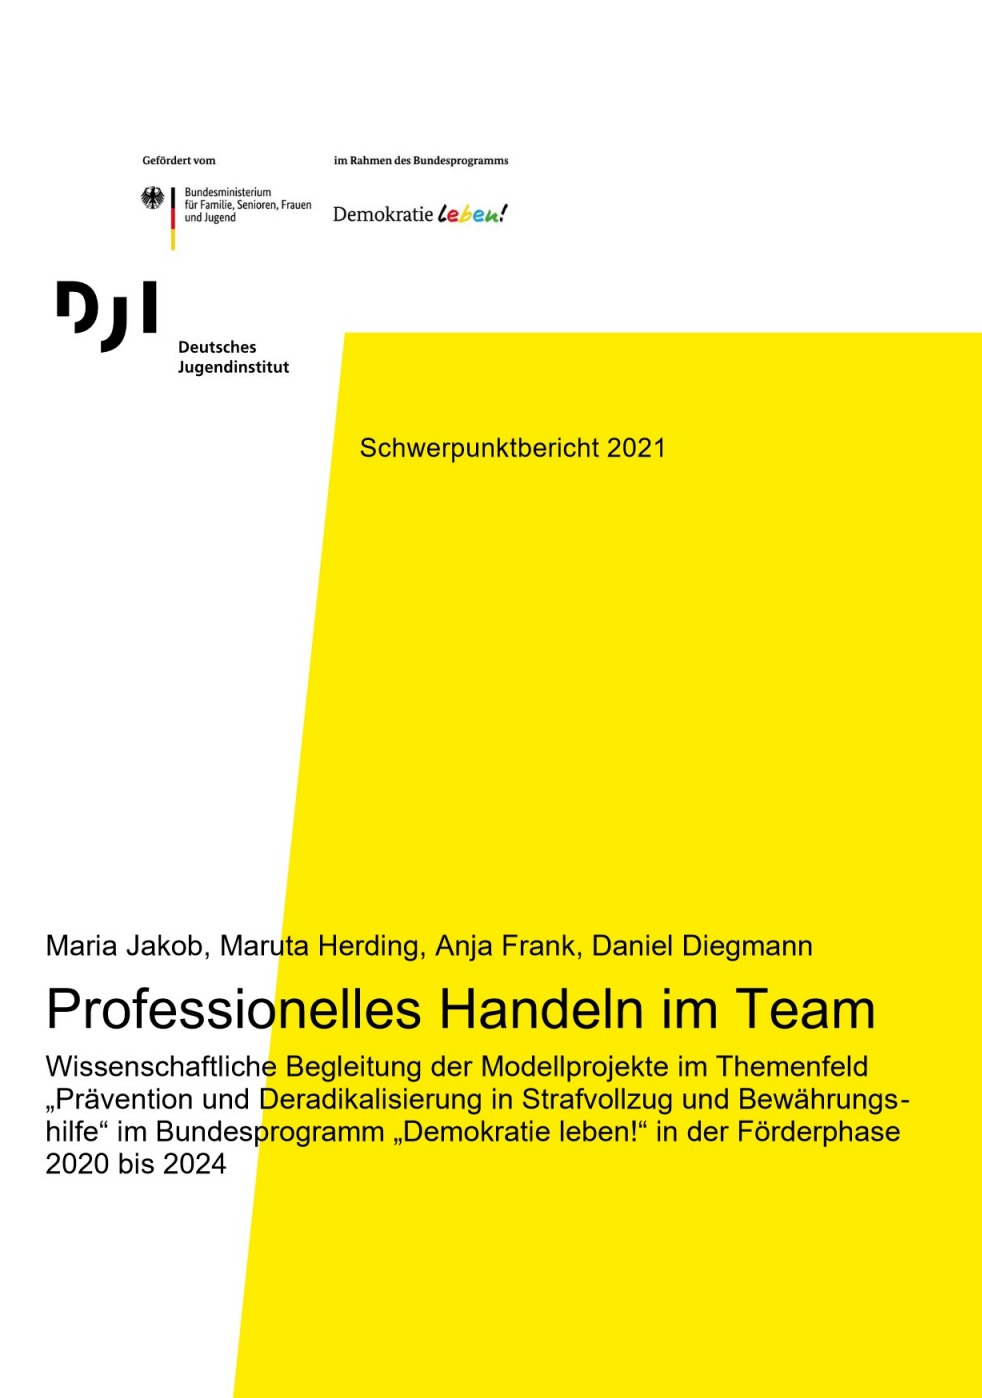 Eine große Fläche des Covers ist in gelb gefärbt. Im unteren Bereich steht der Titel des Berichts "Professionelles Handeln im Team".